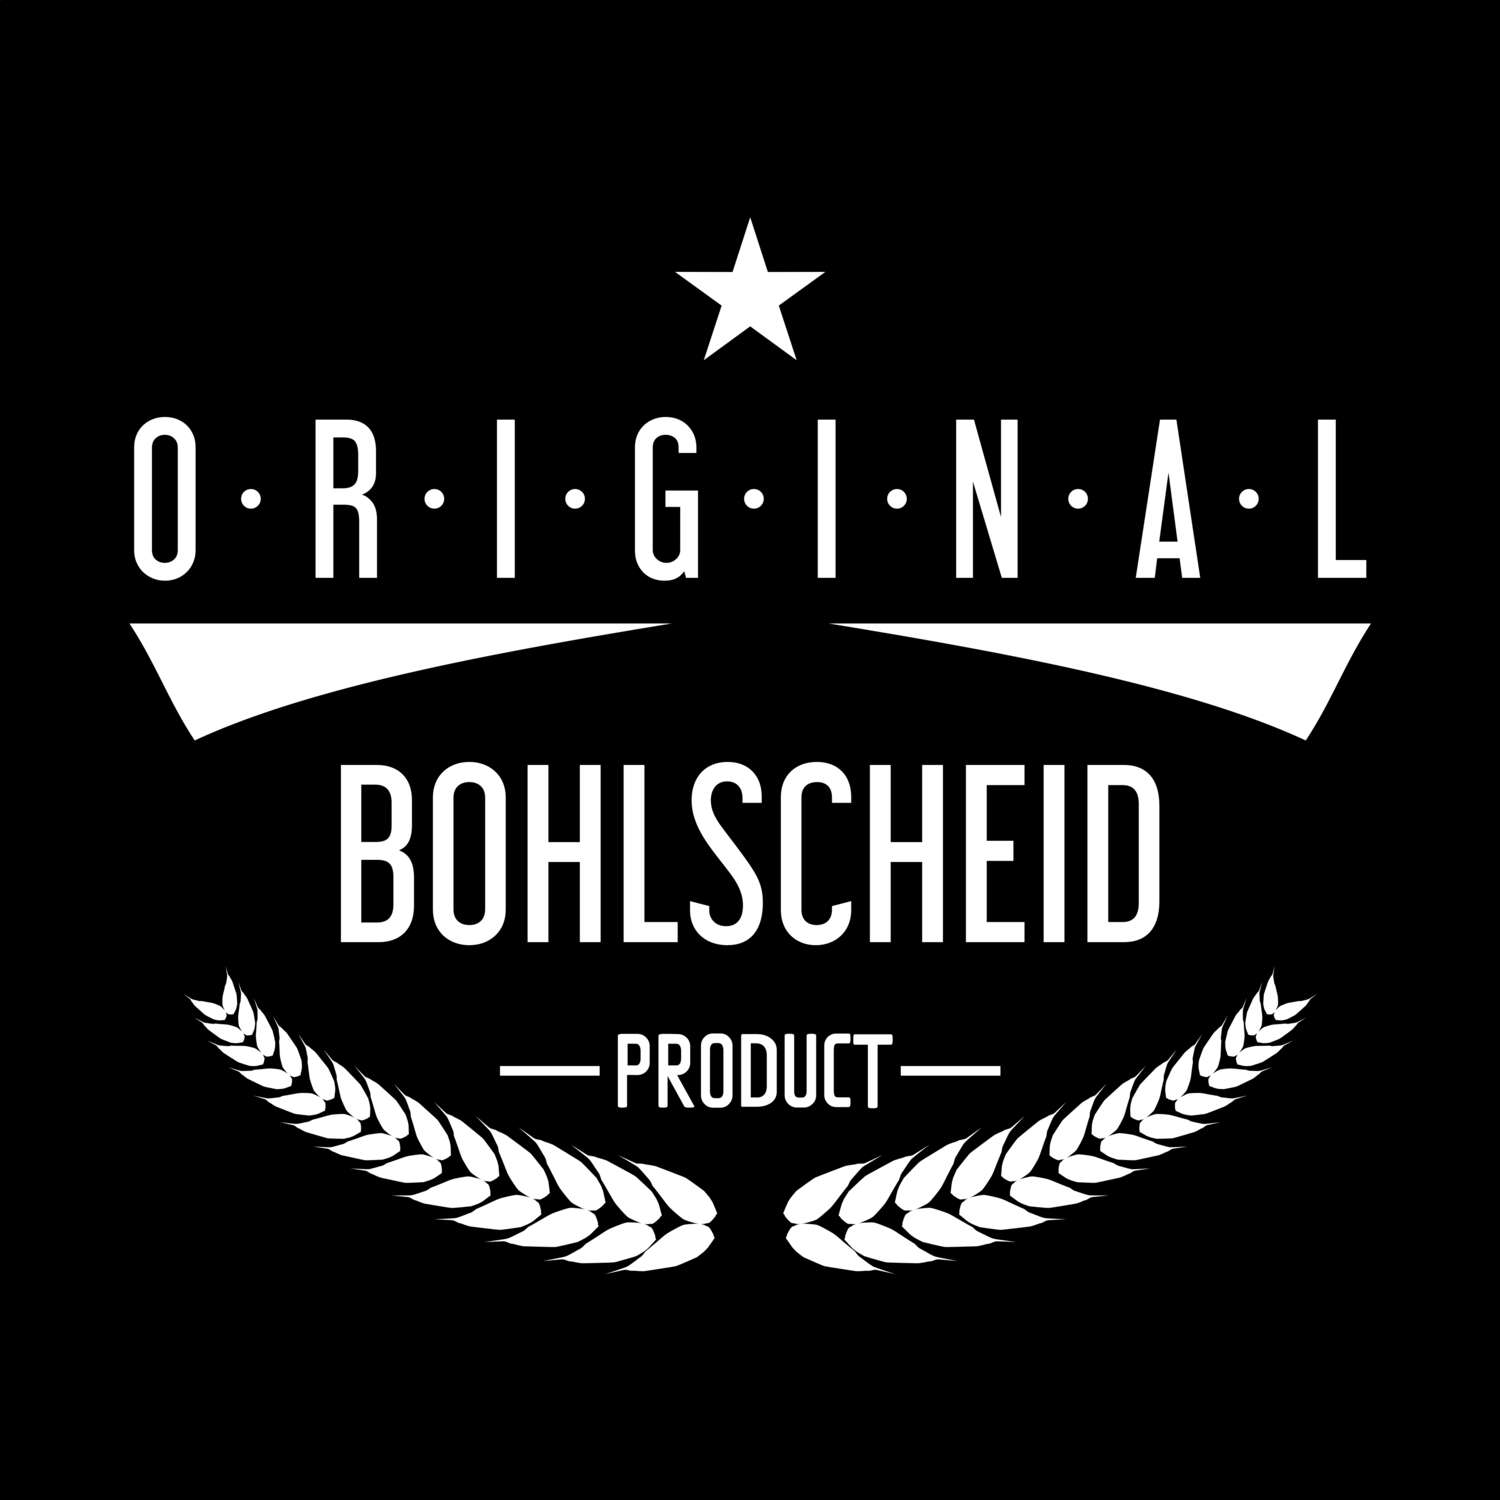 Bohlscheid T-Shirt »Original Product«